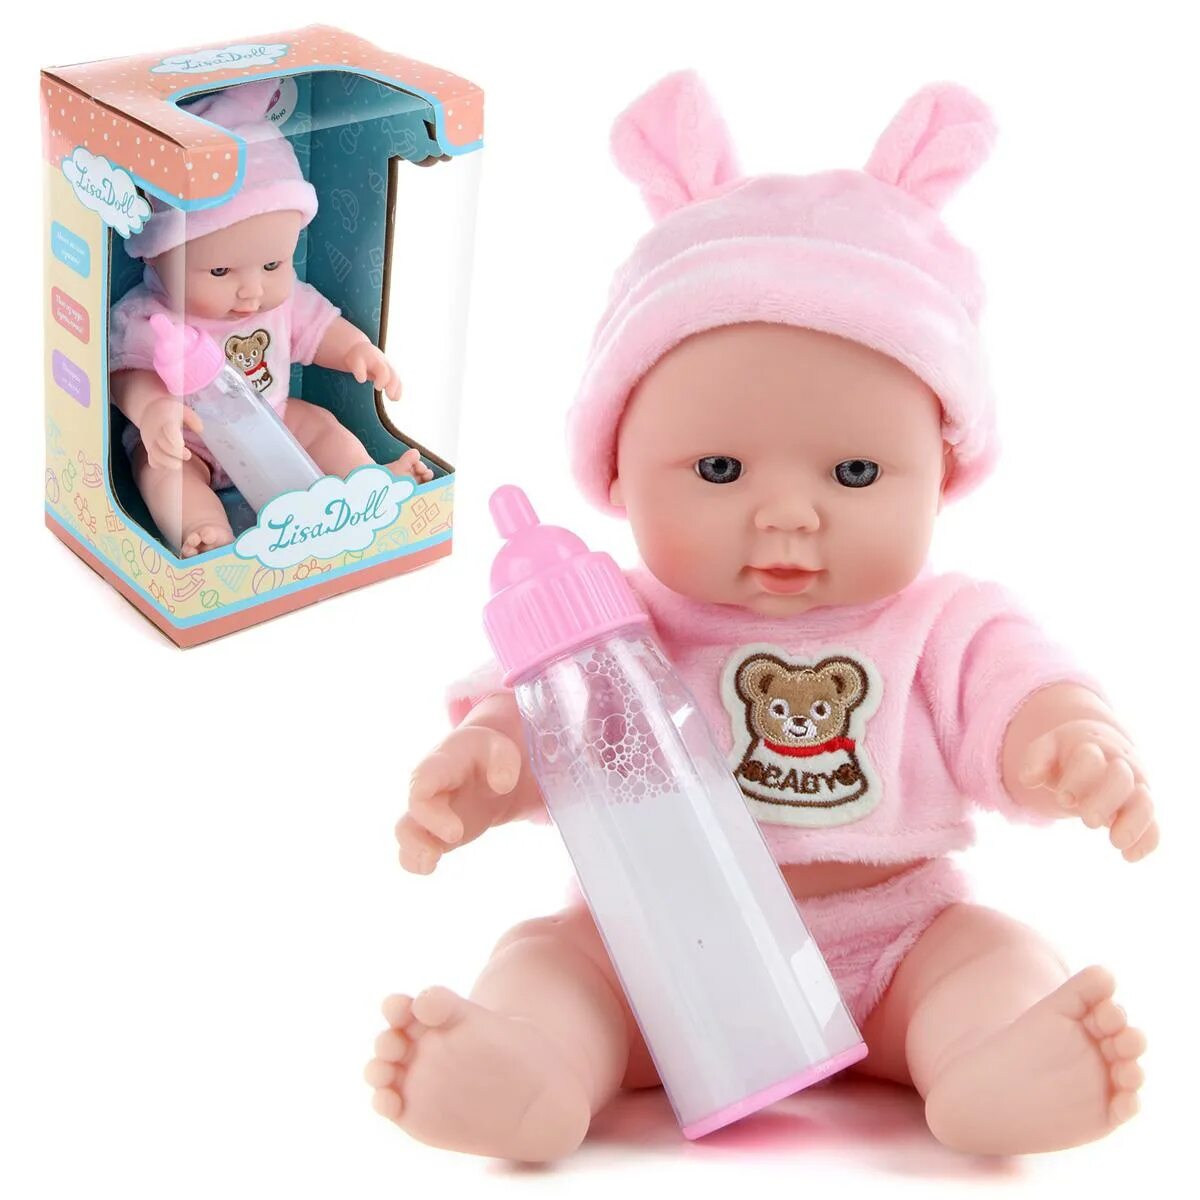 Розовый пупс. Пупс Lisa Doll 97046 40 см. Бутылки для кукол пупсов. Розовый пупсик. Игрушка розовый розовый пупсик.